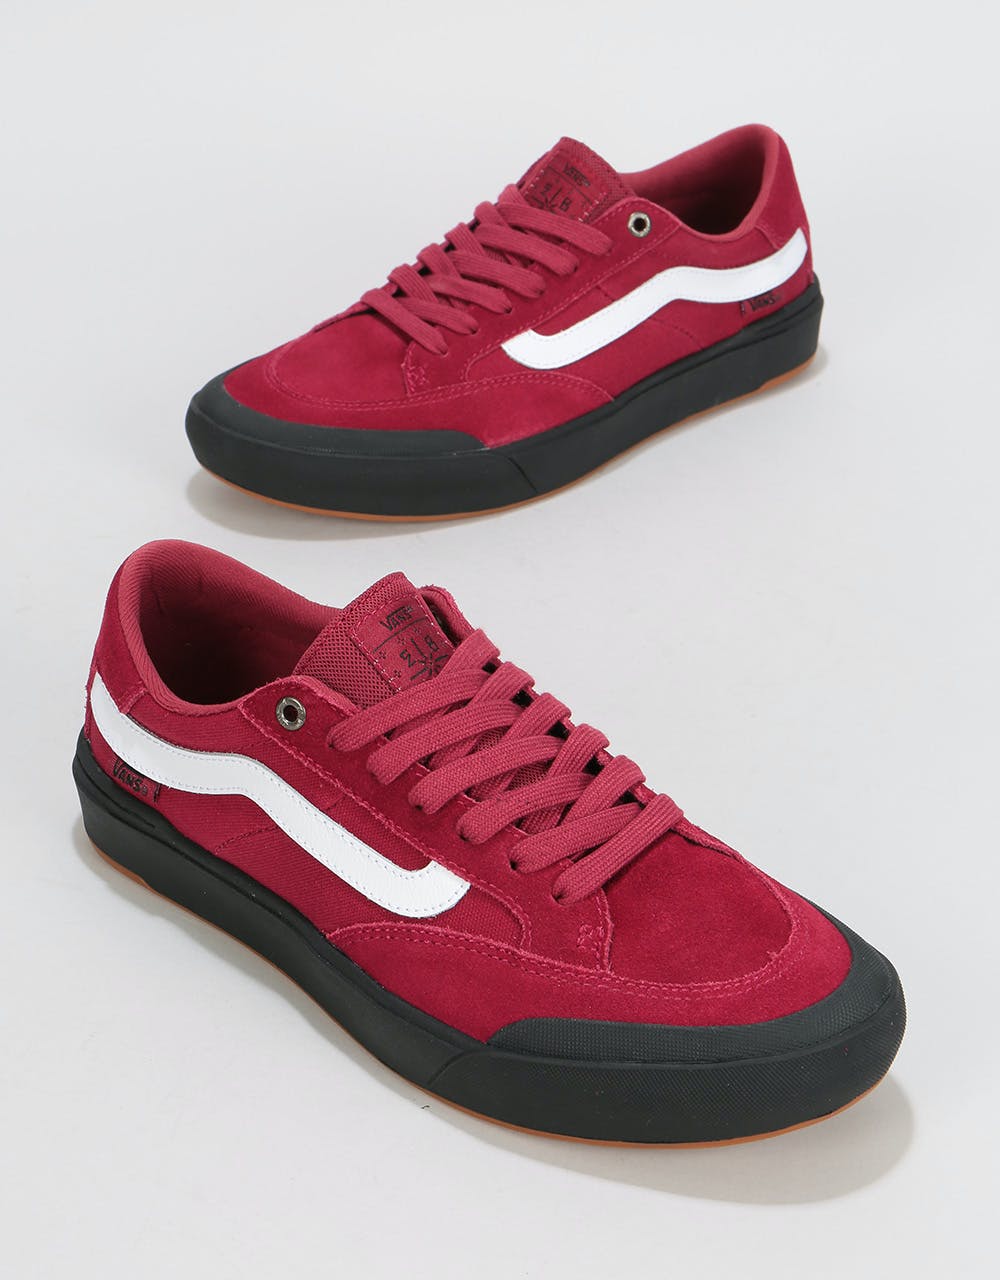 Vans Berle Pro Skate Shoes - Rumba Red